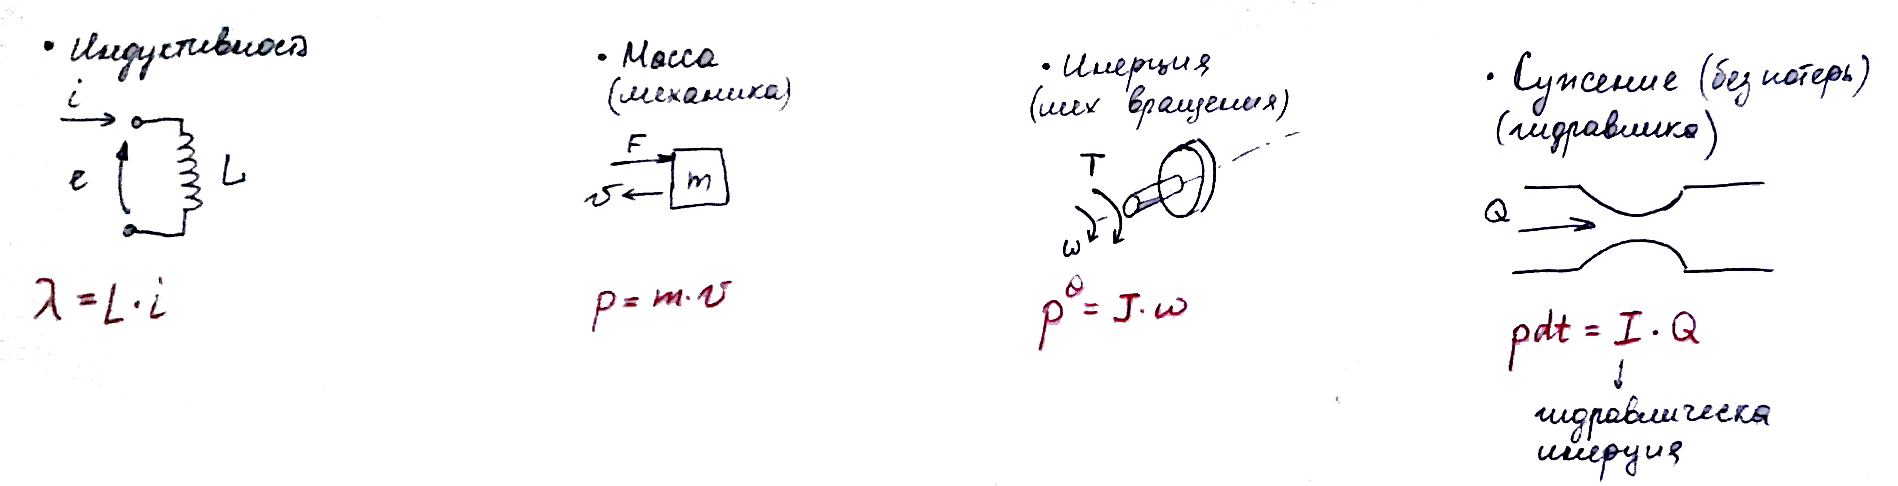 Моделирование динамических систем (метод Лагранжа и Bond graph approach) - 31